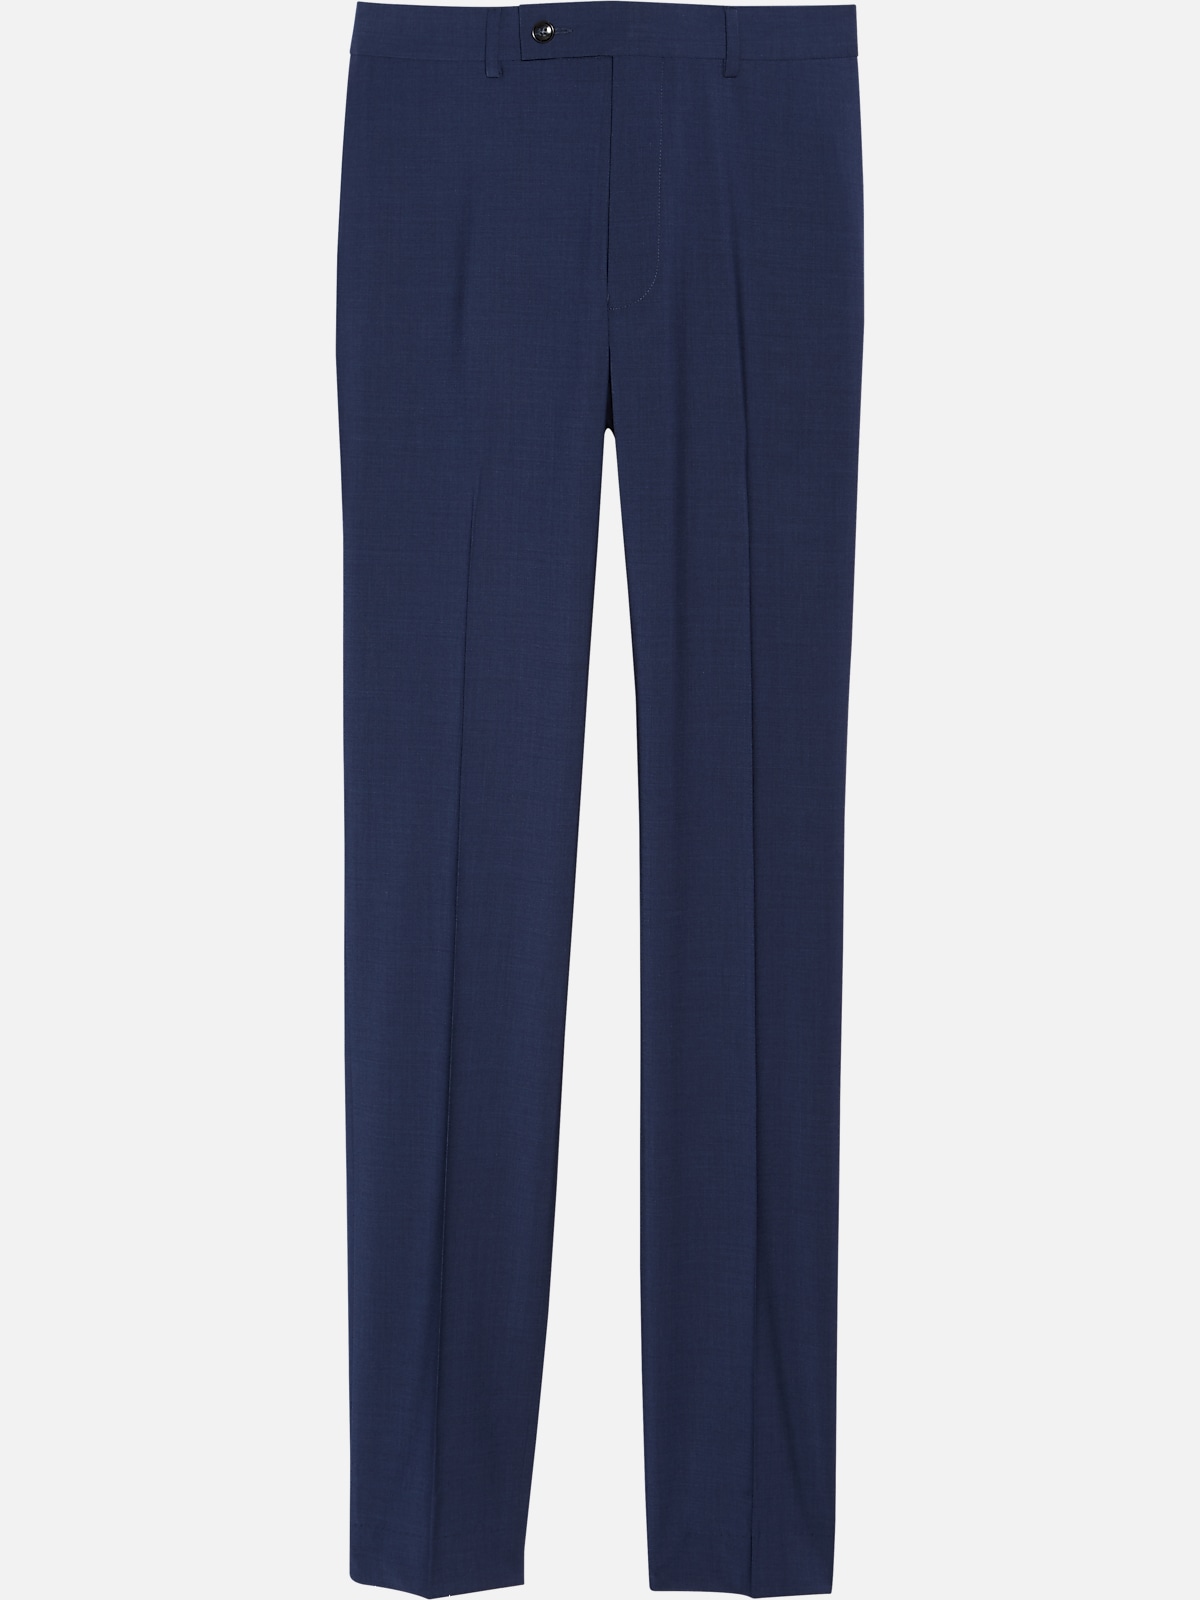 Calvin Klein Suit Separates Pants | All Sale| Men's Wearhouse